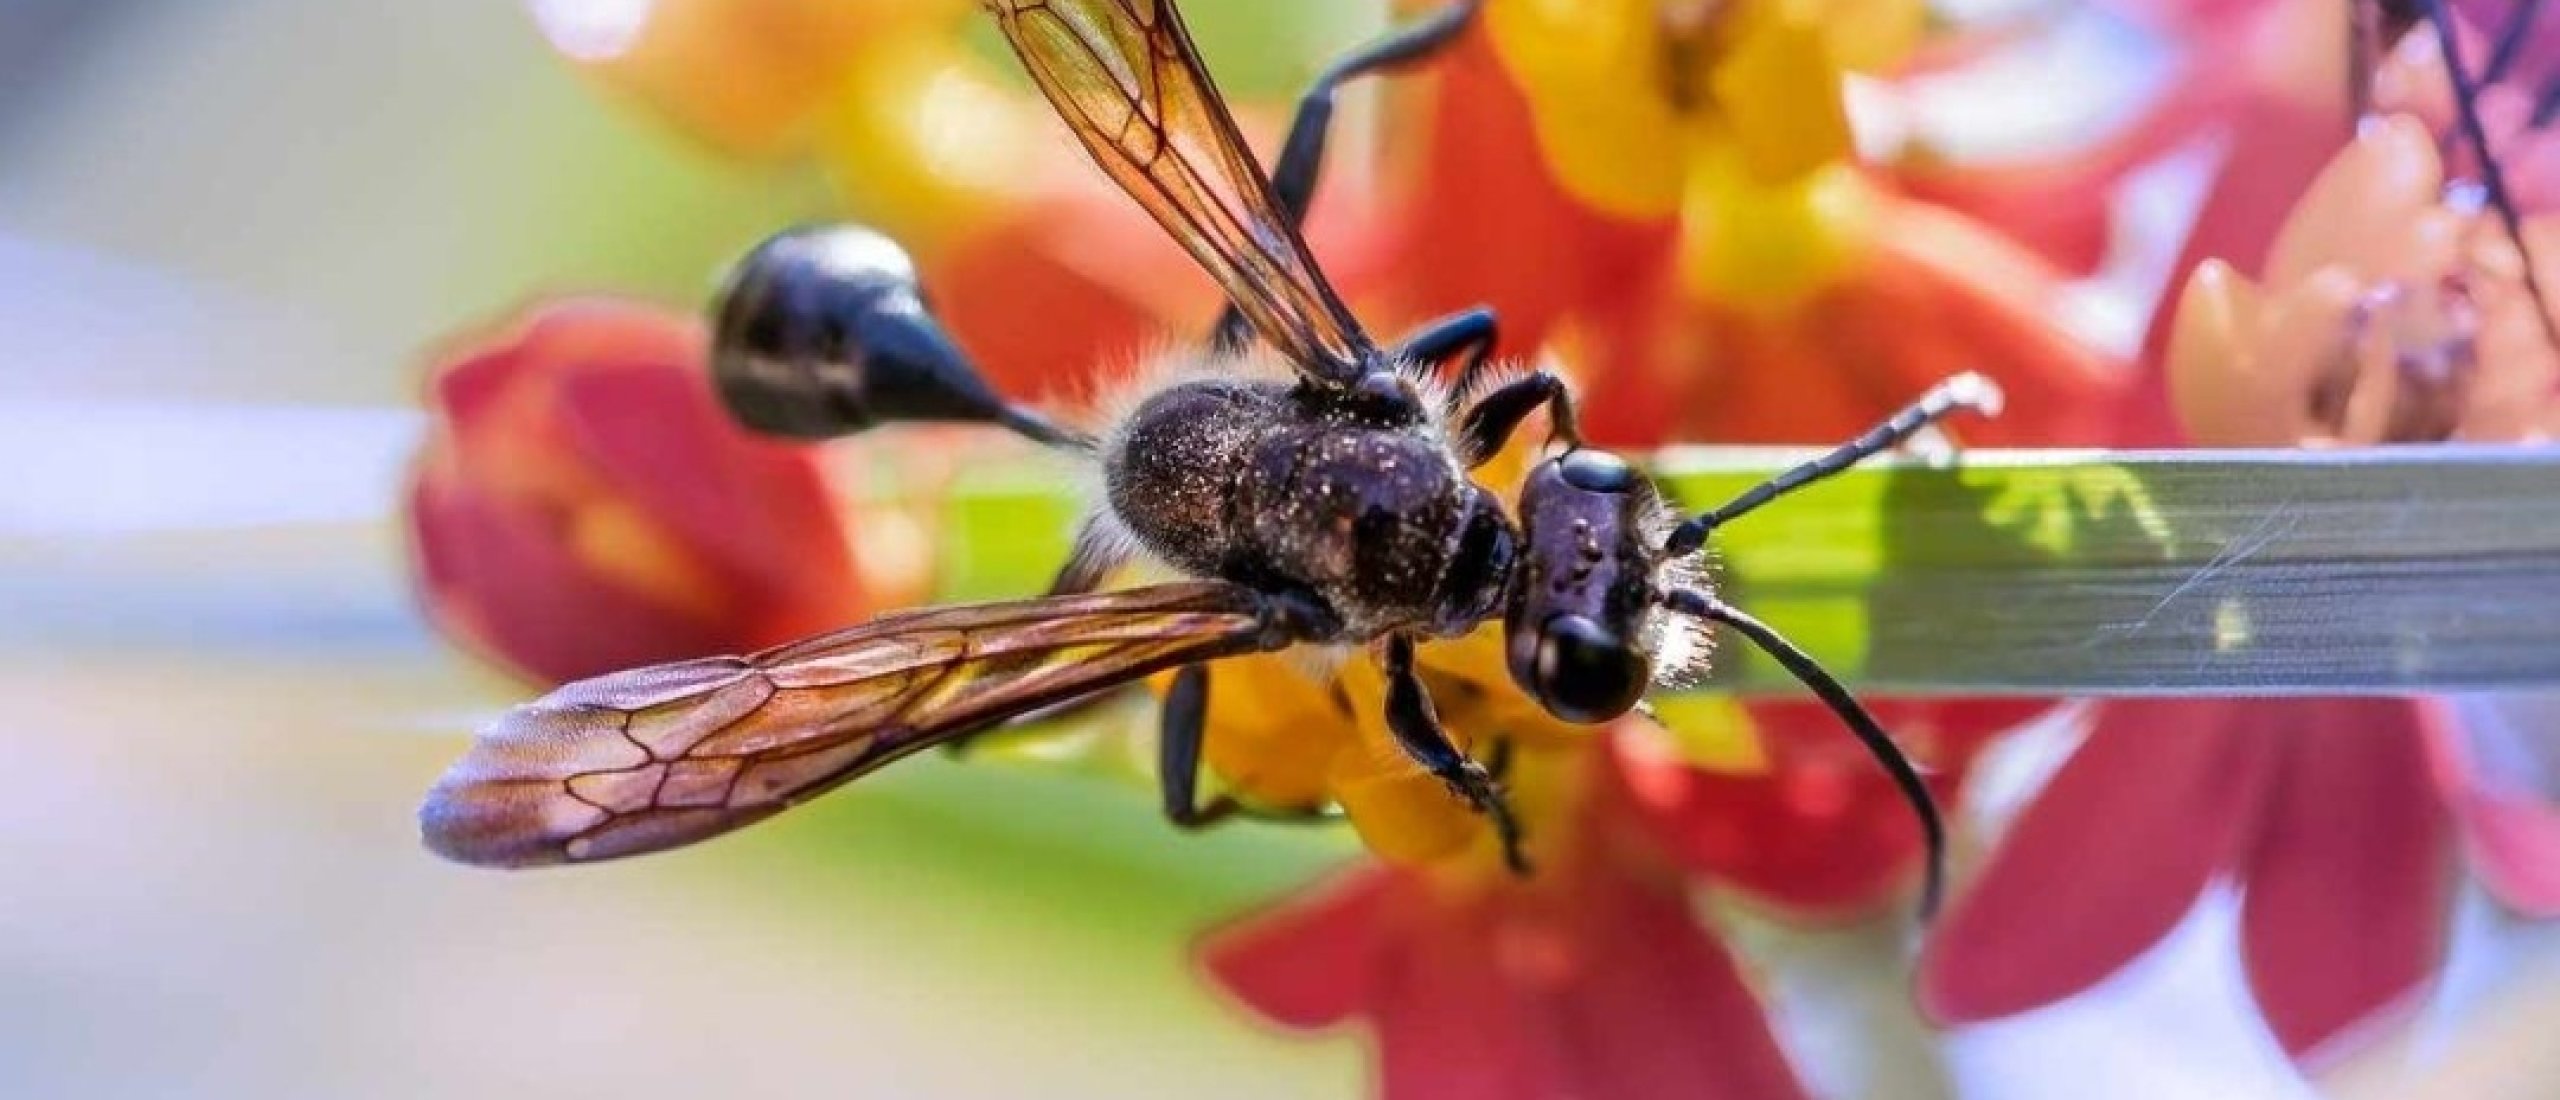 Gedragen jouw collega's zich als vliegende mieren?